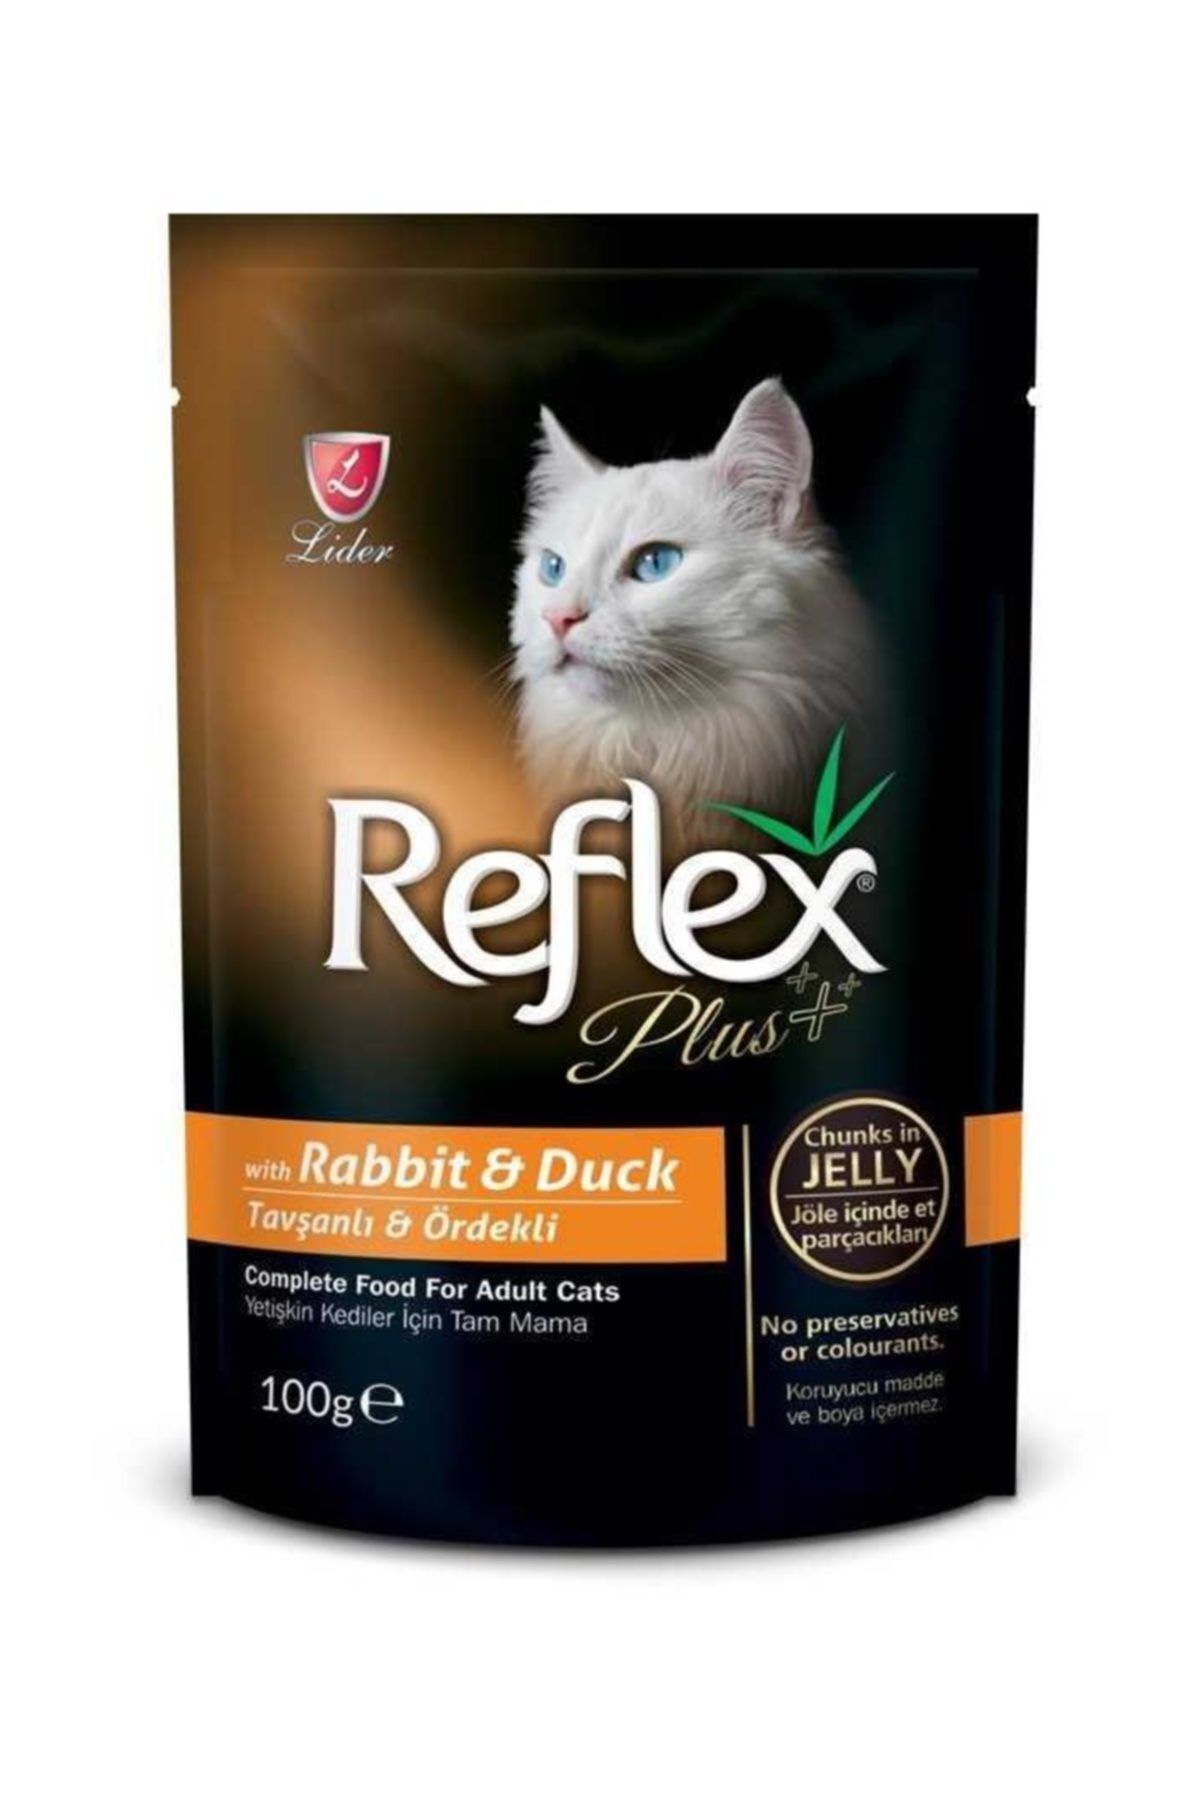 Reflex Plus Tavşan Ve Ördekli Pouch Kedi Konserve Jöle İçinde Et Parçacıklı 100 Gr